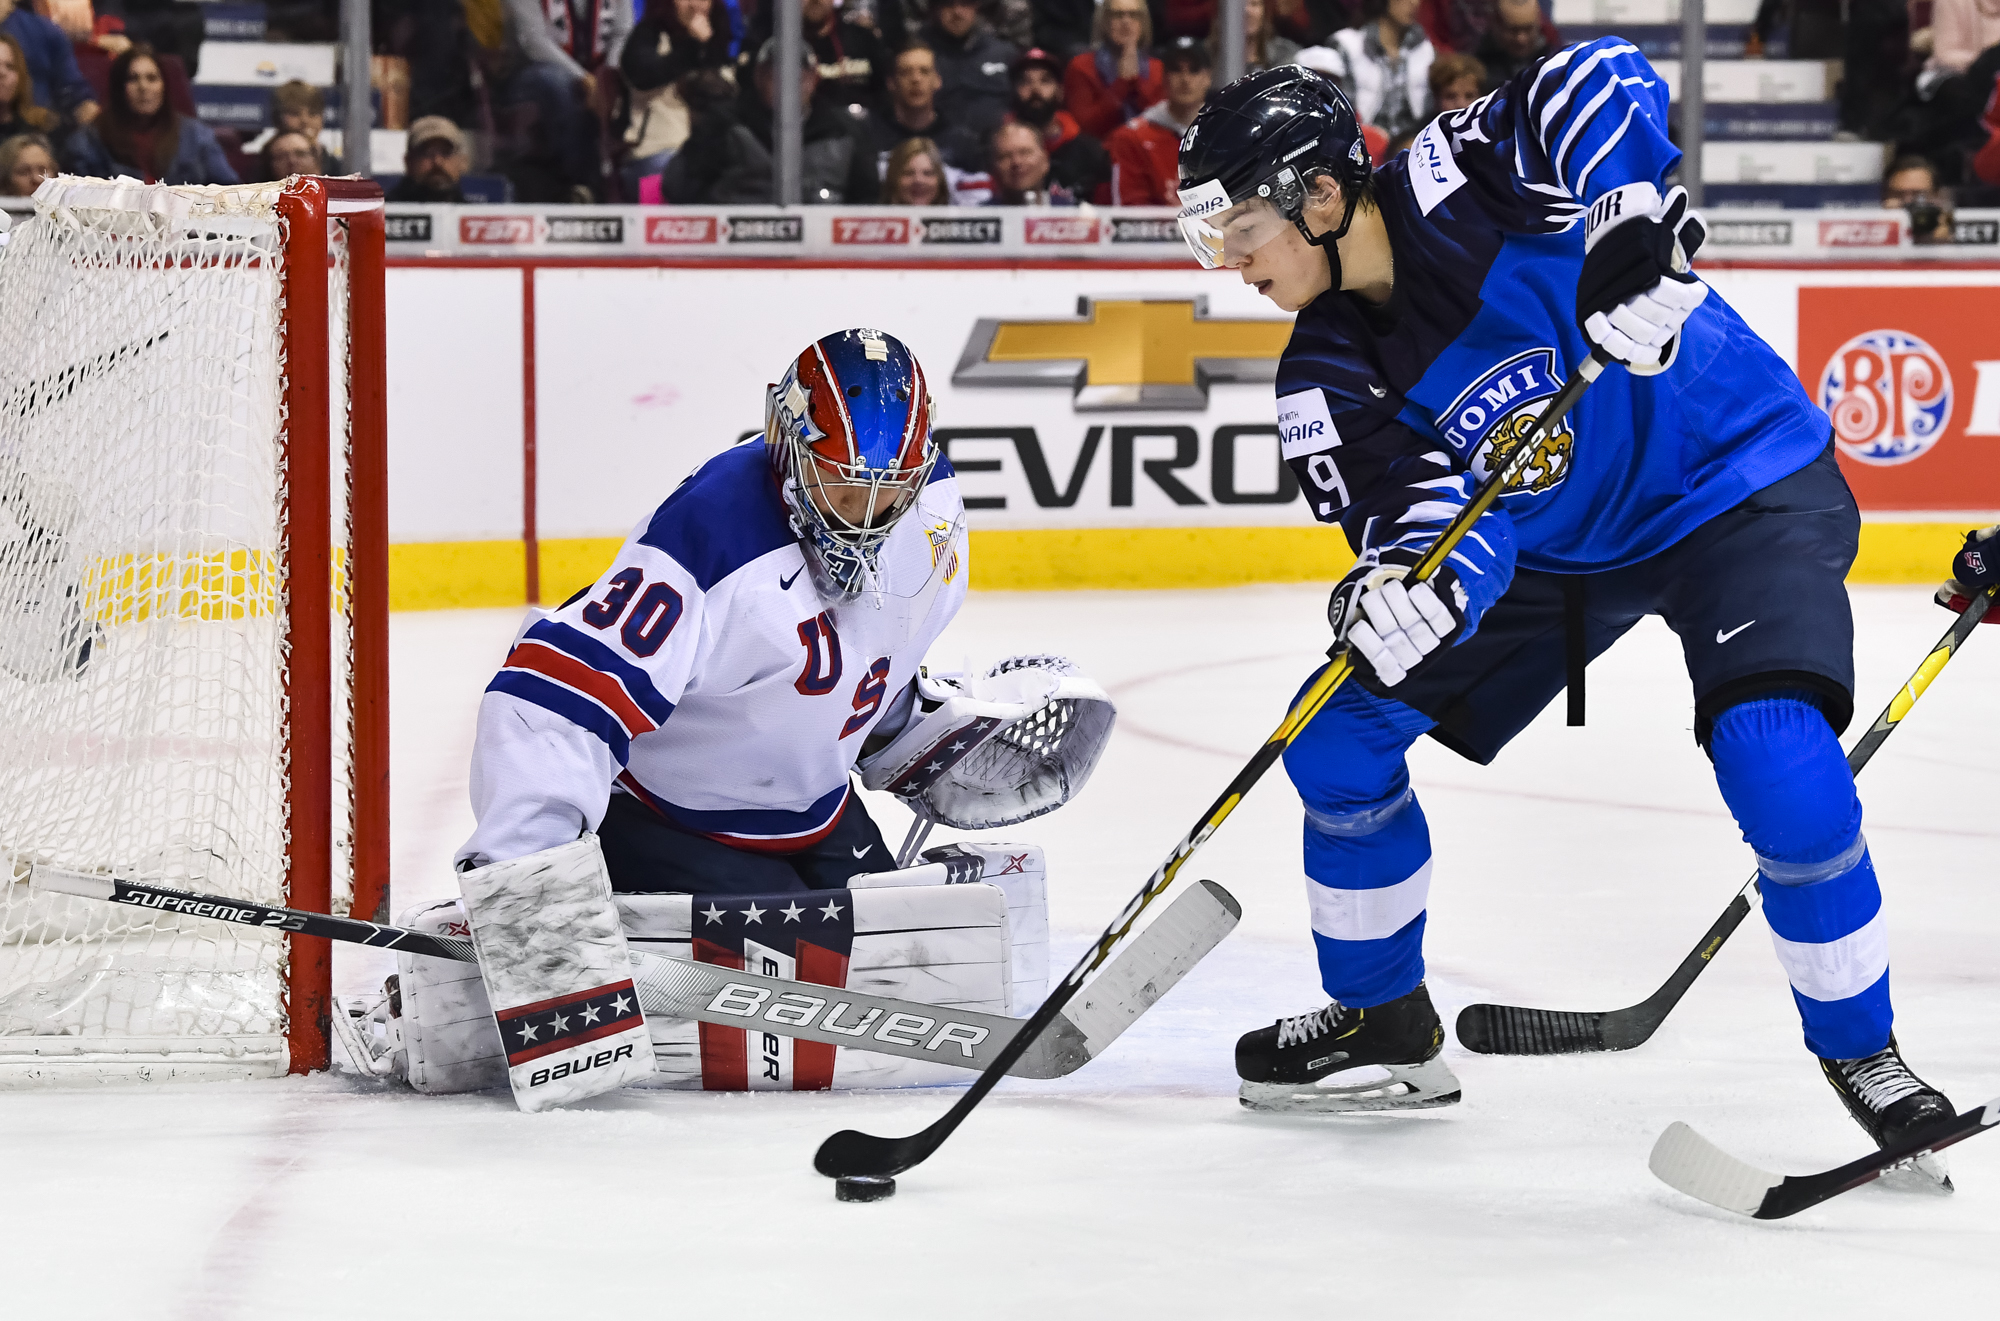 IIHF - Kaapo Kakko gives Finns gold